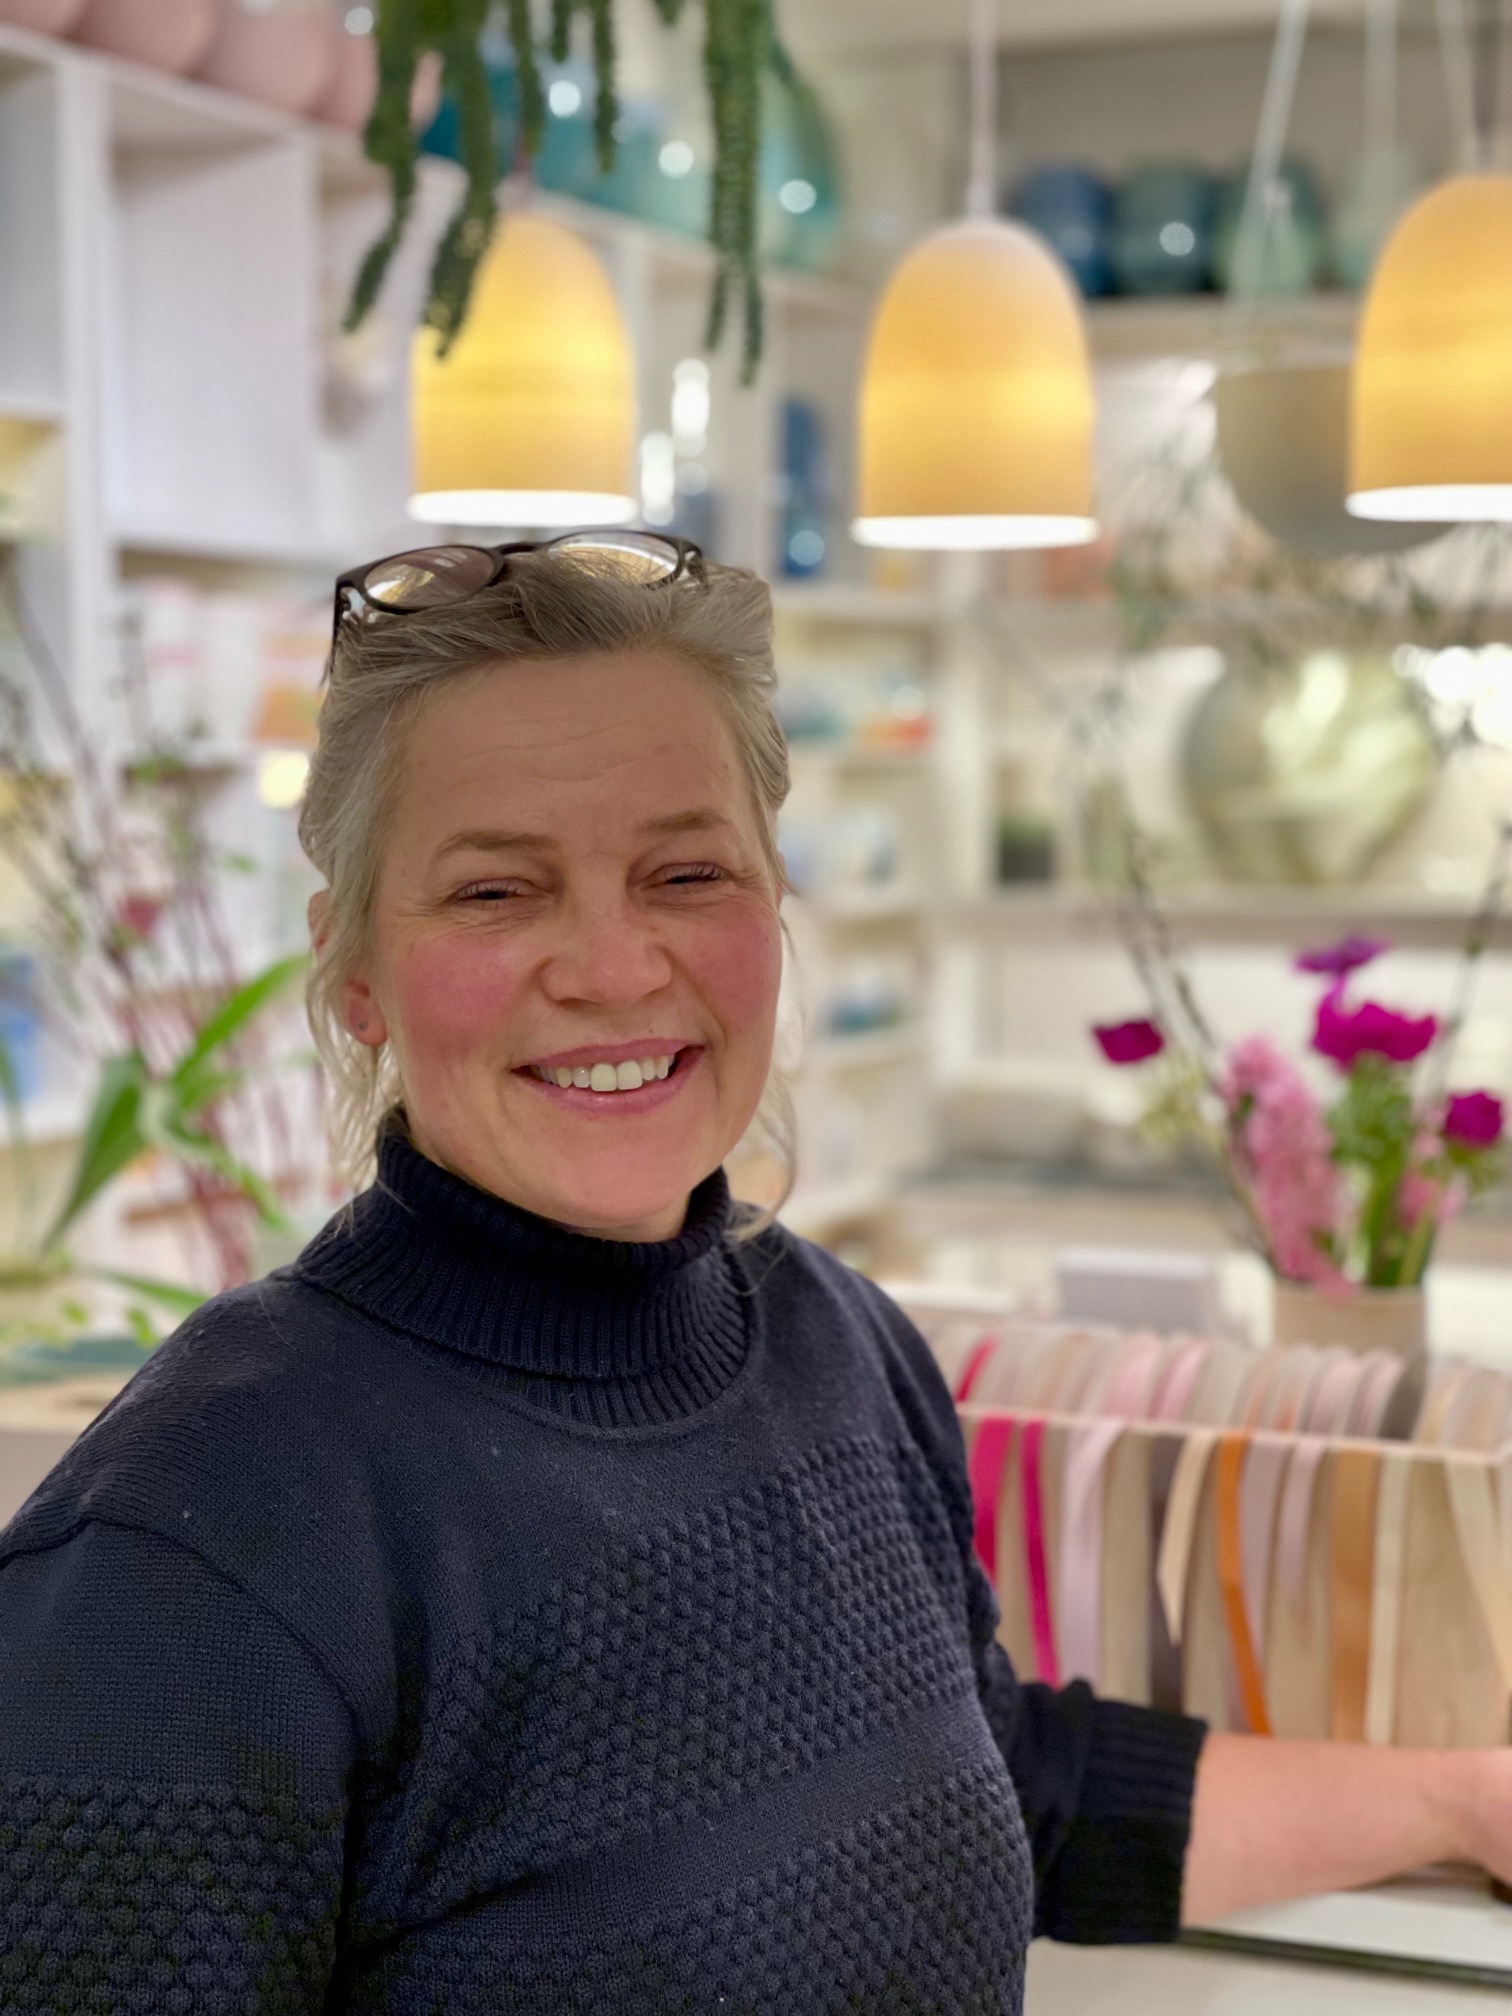 Keramiker Sussi Krull står i sin smukke værkstedsbutik i København, hvor man i baggrunden ser et udvalg af hendes unikke keramik. Billedet er taget af Vibeke Lahrmann